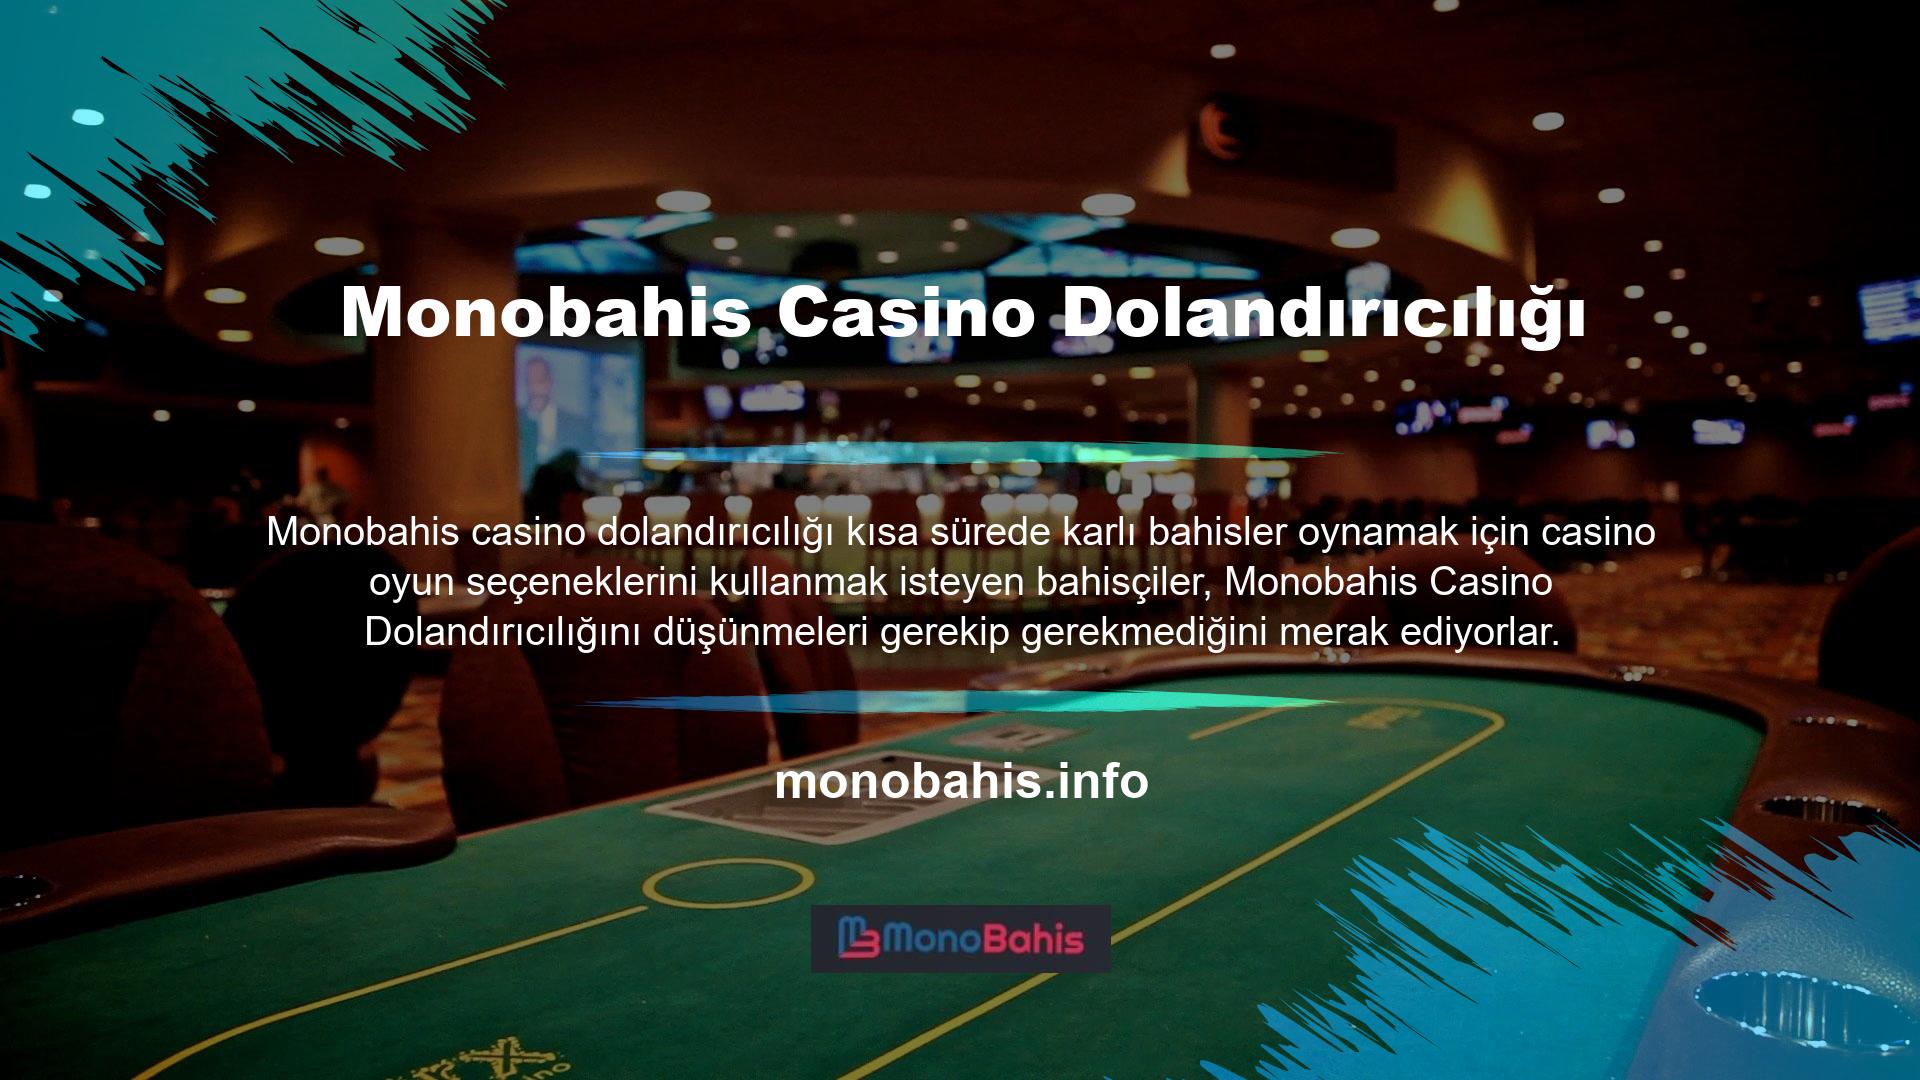 Bu site sizin özel durumunuza kesin bir yanıt sunuyor: Monobahis Casino Dolandırıcılığı